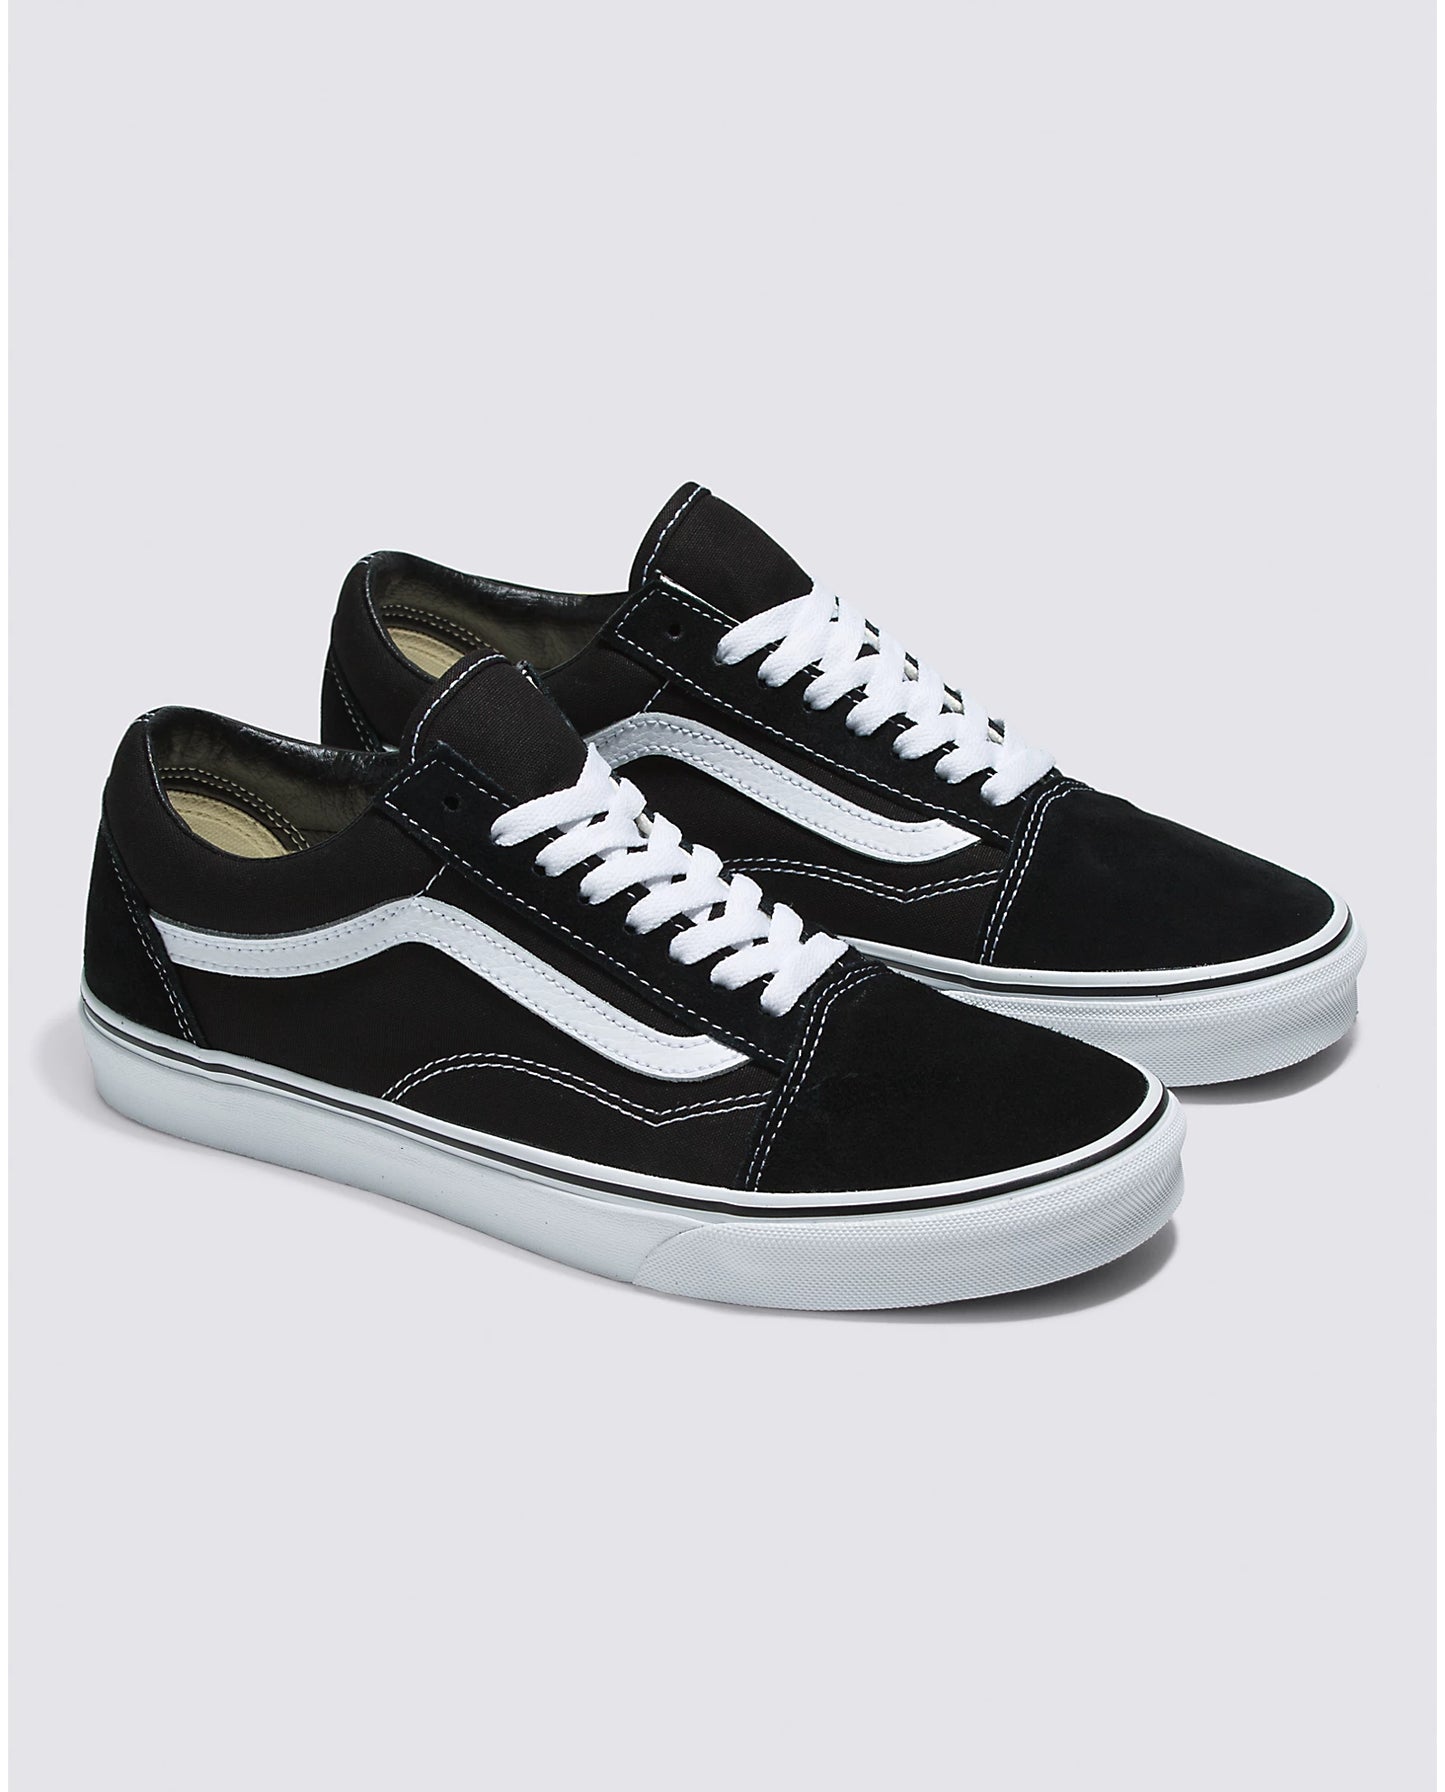 Vans Women's Old Skool Sneakers - Black/White